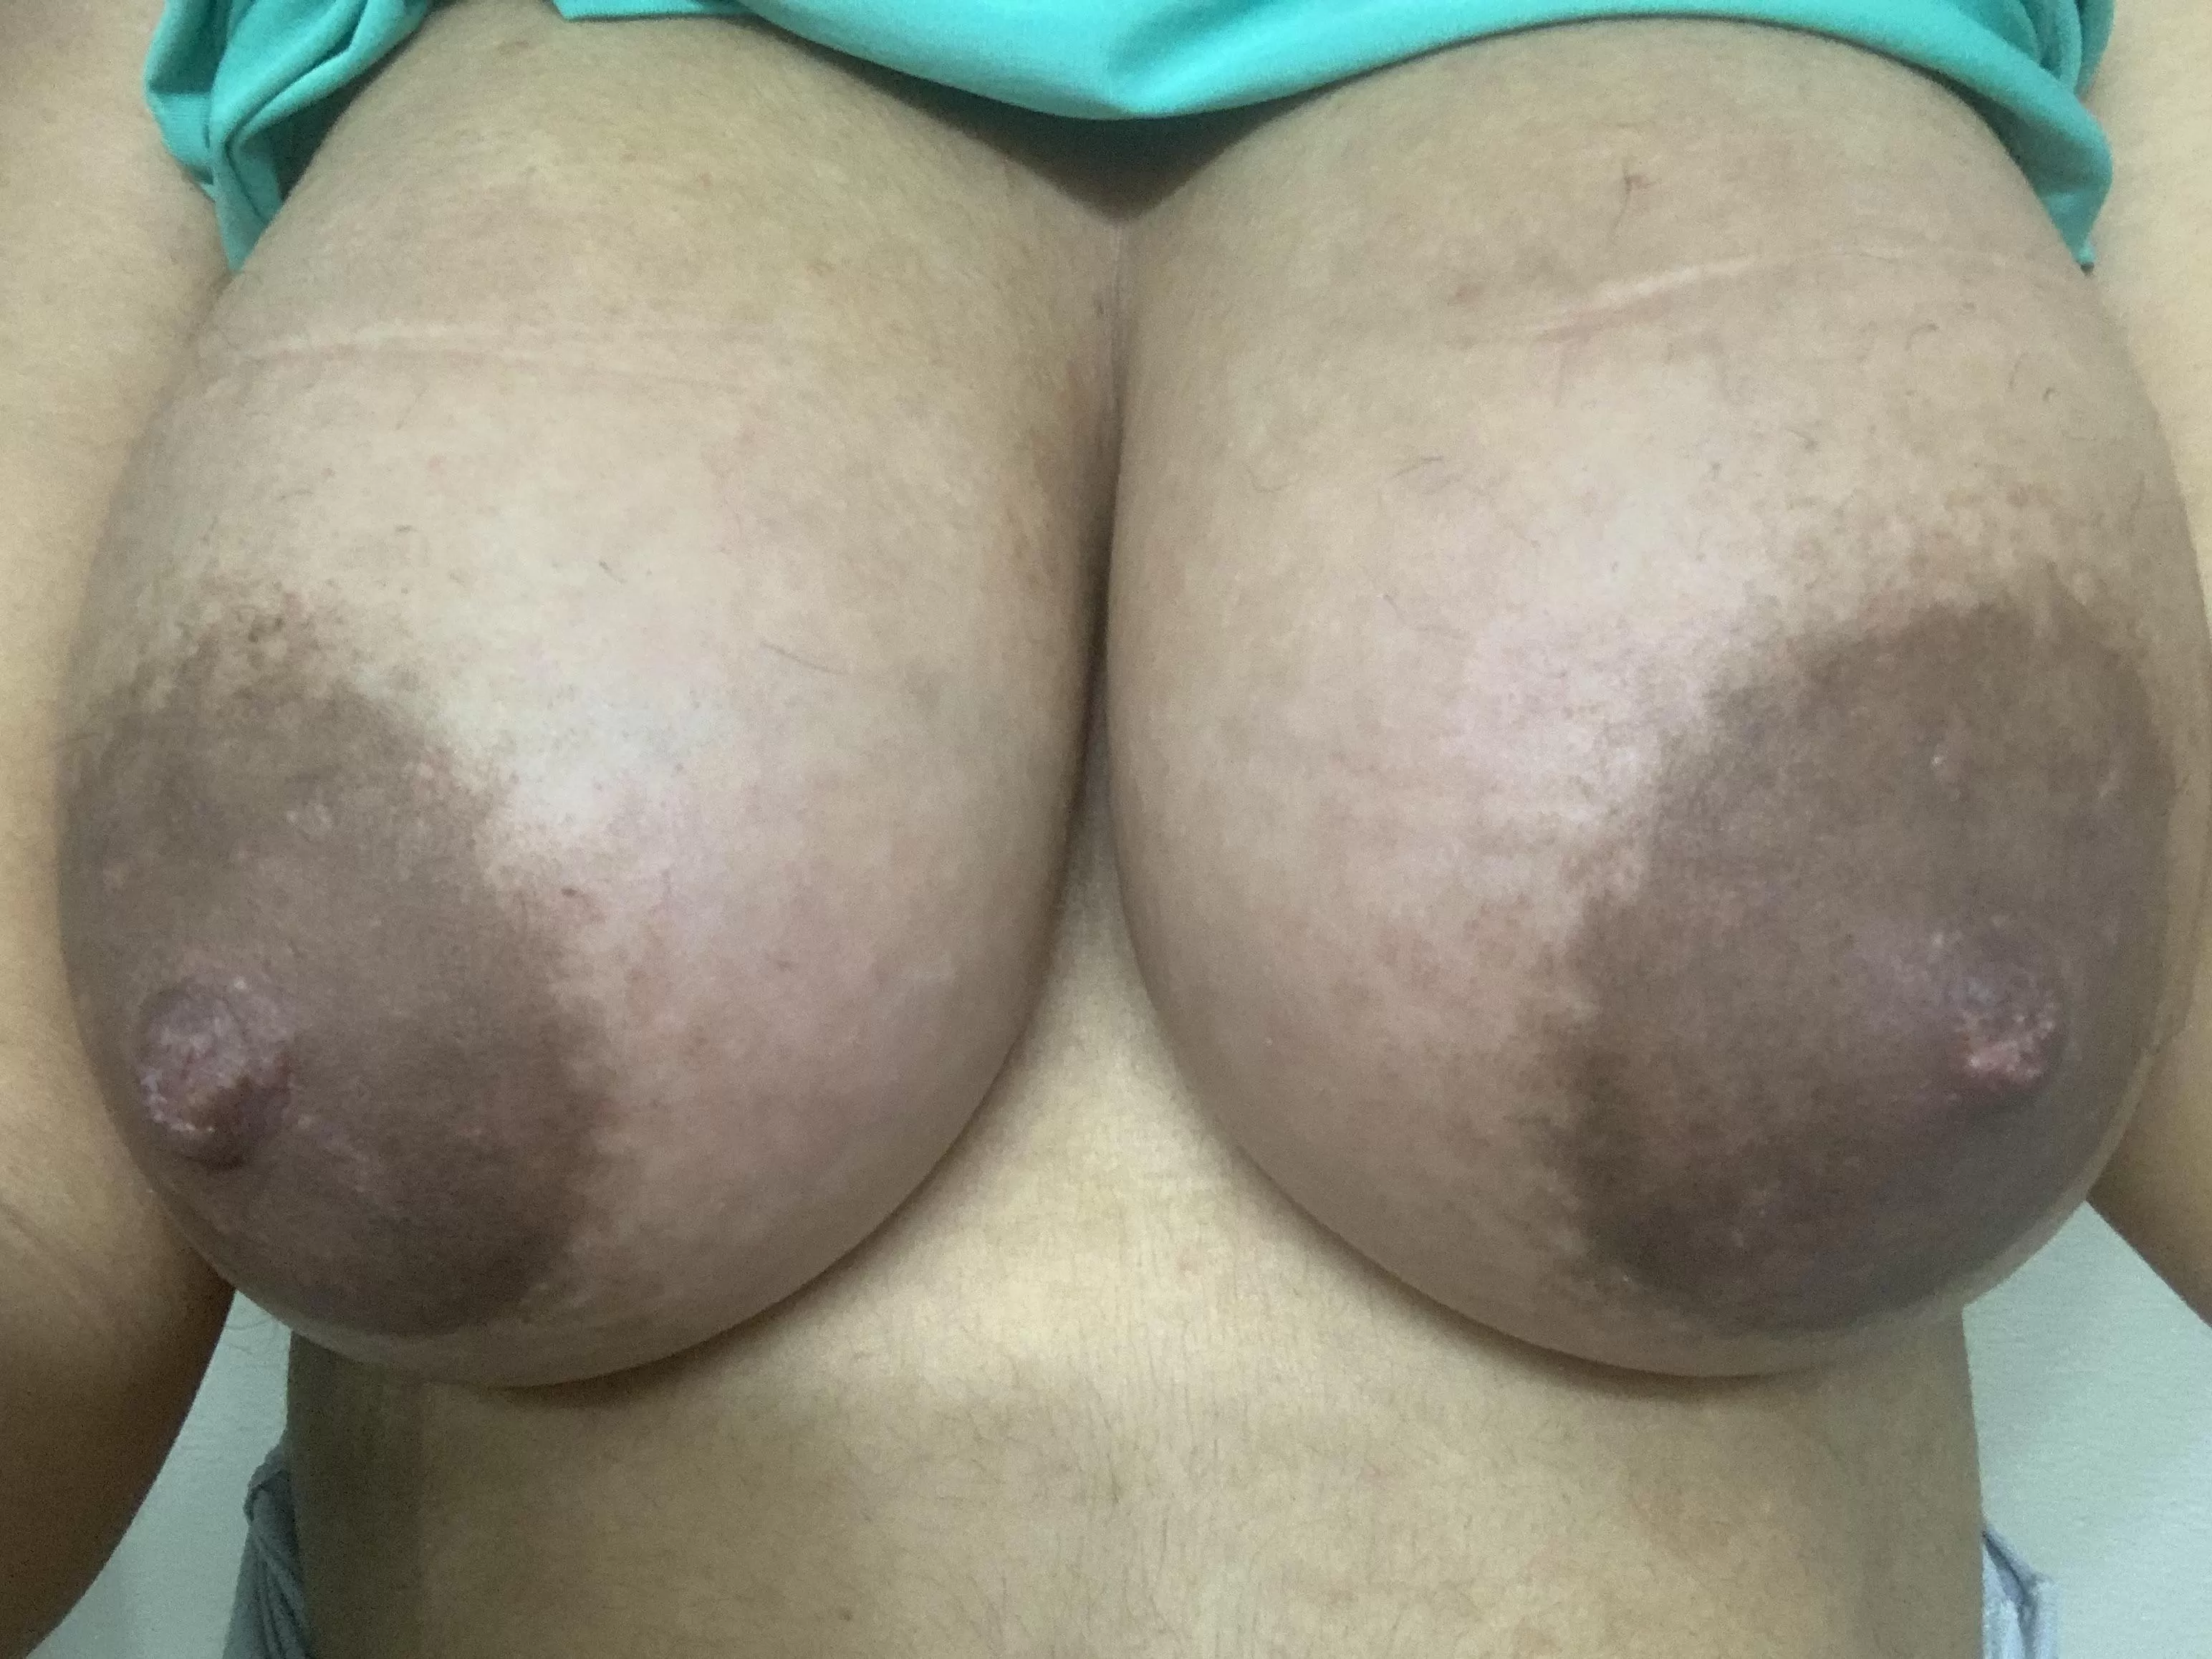 Pregnant tits pics